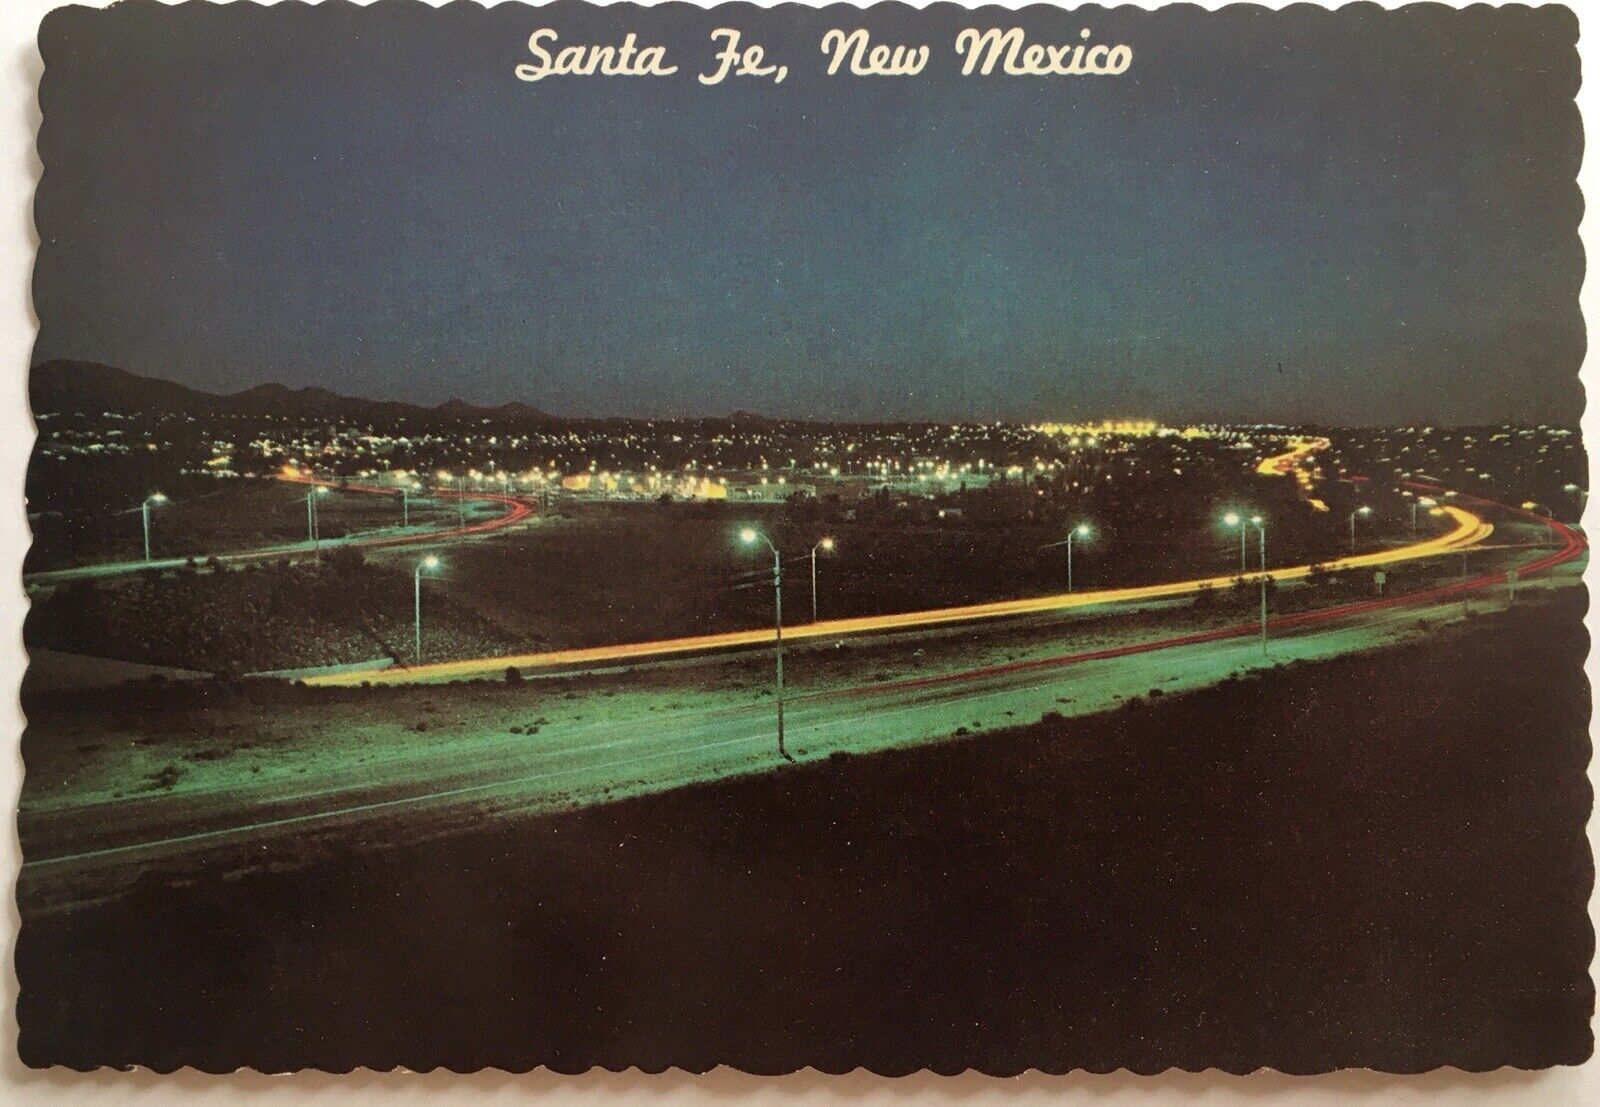 1974 Santa Fe New Mexico Postcard 5 13/16x3 31/32” Entering City I-25 Nightfall